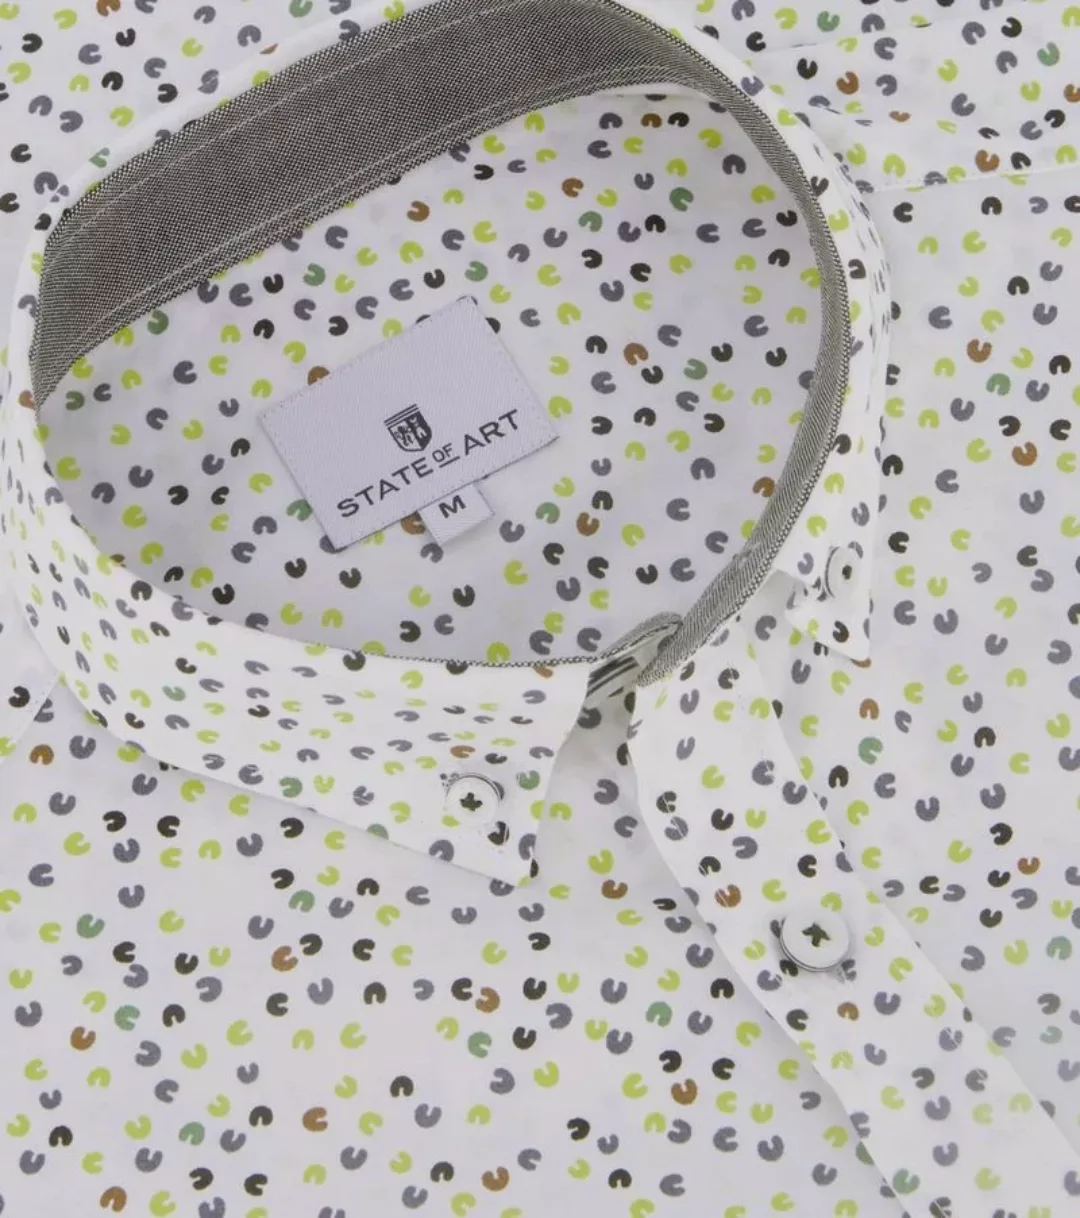 State Of Art Short Sleeve Hemd Druck Grün  - Größe 3XL günstig online kaufen